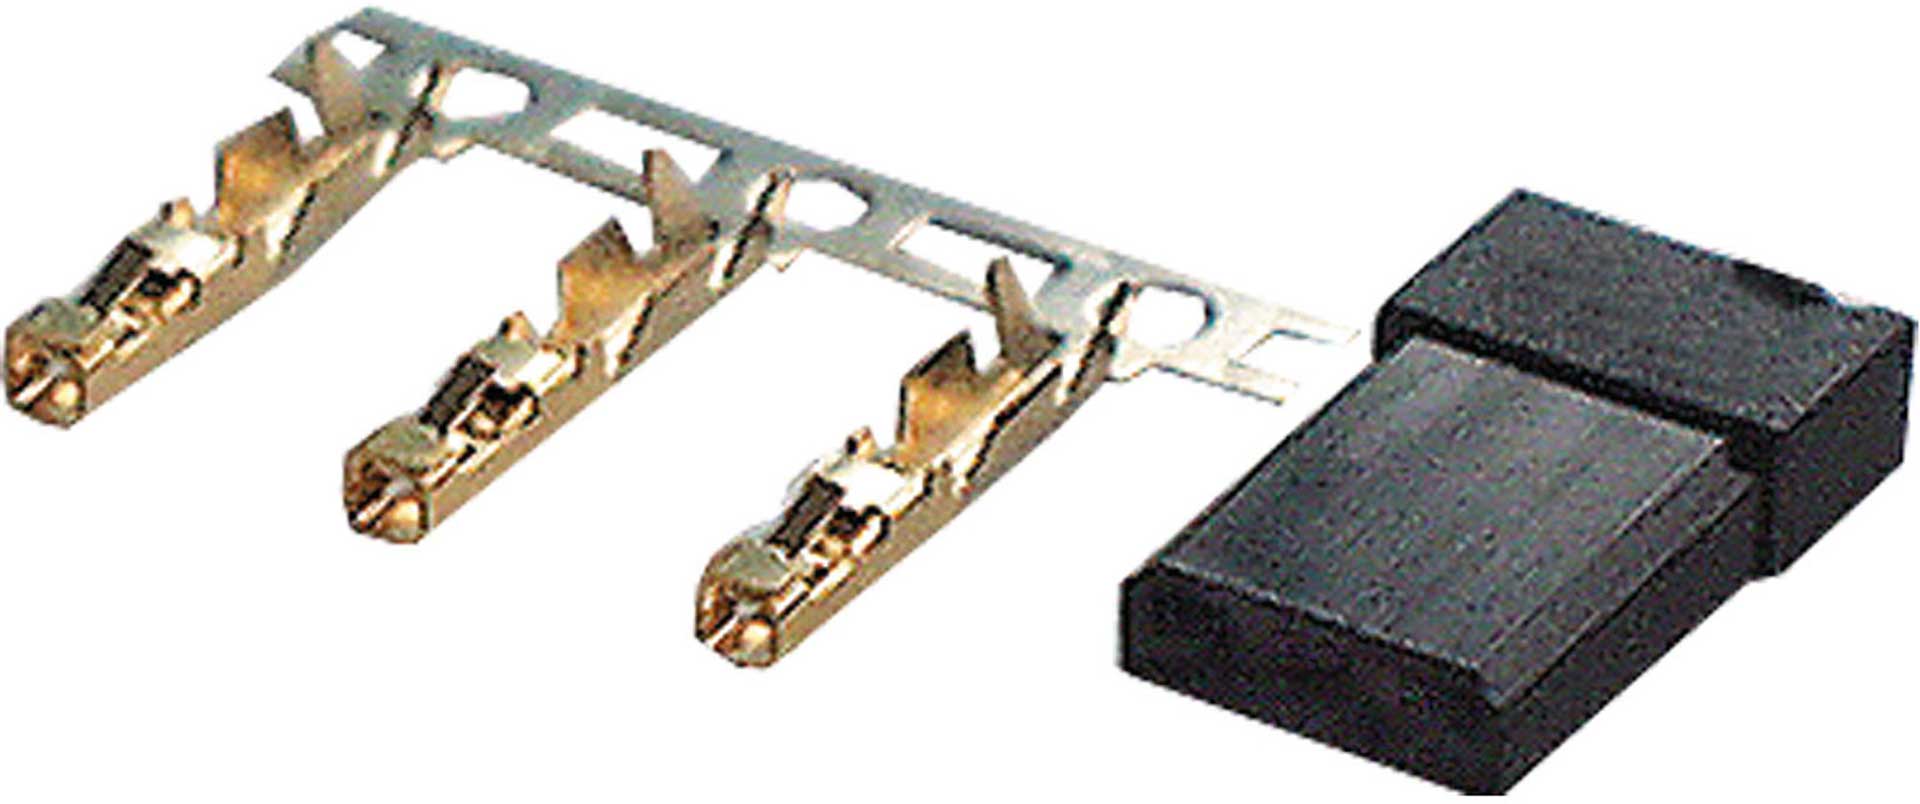 Graupner Servogegenkabel Graupner Jr Uni 0.34 Qmm Twisted Silicone 300mm partCore 130006 4250984802251 